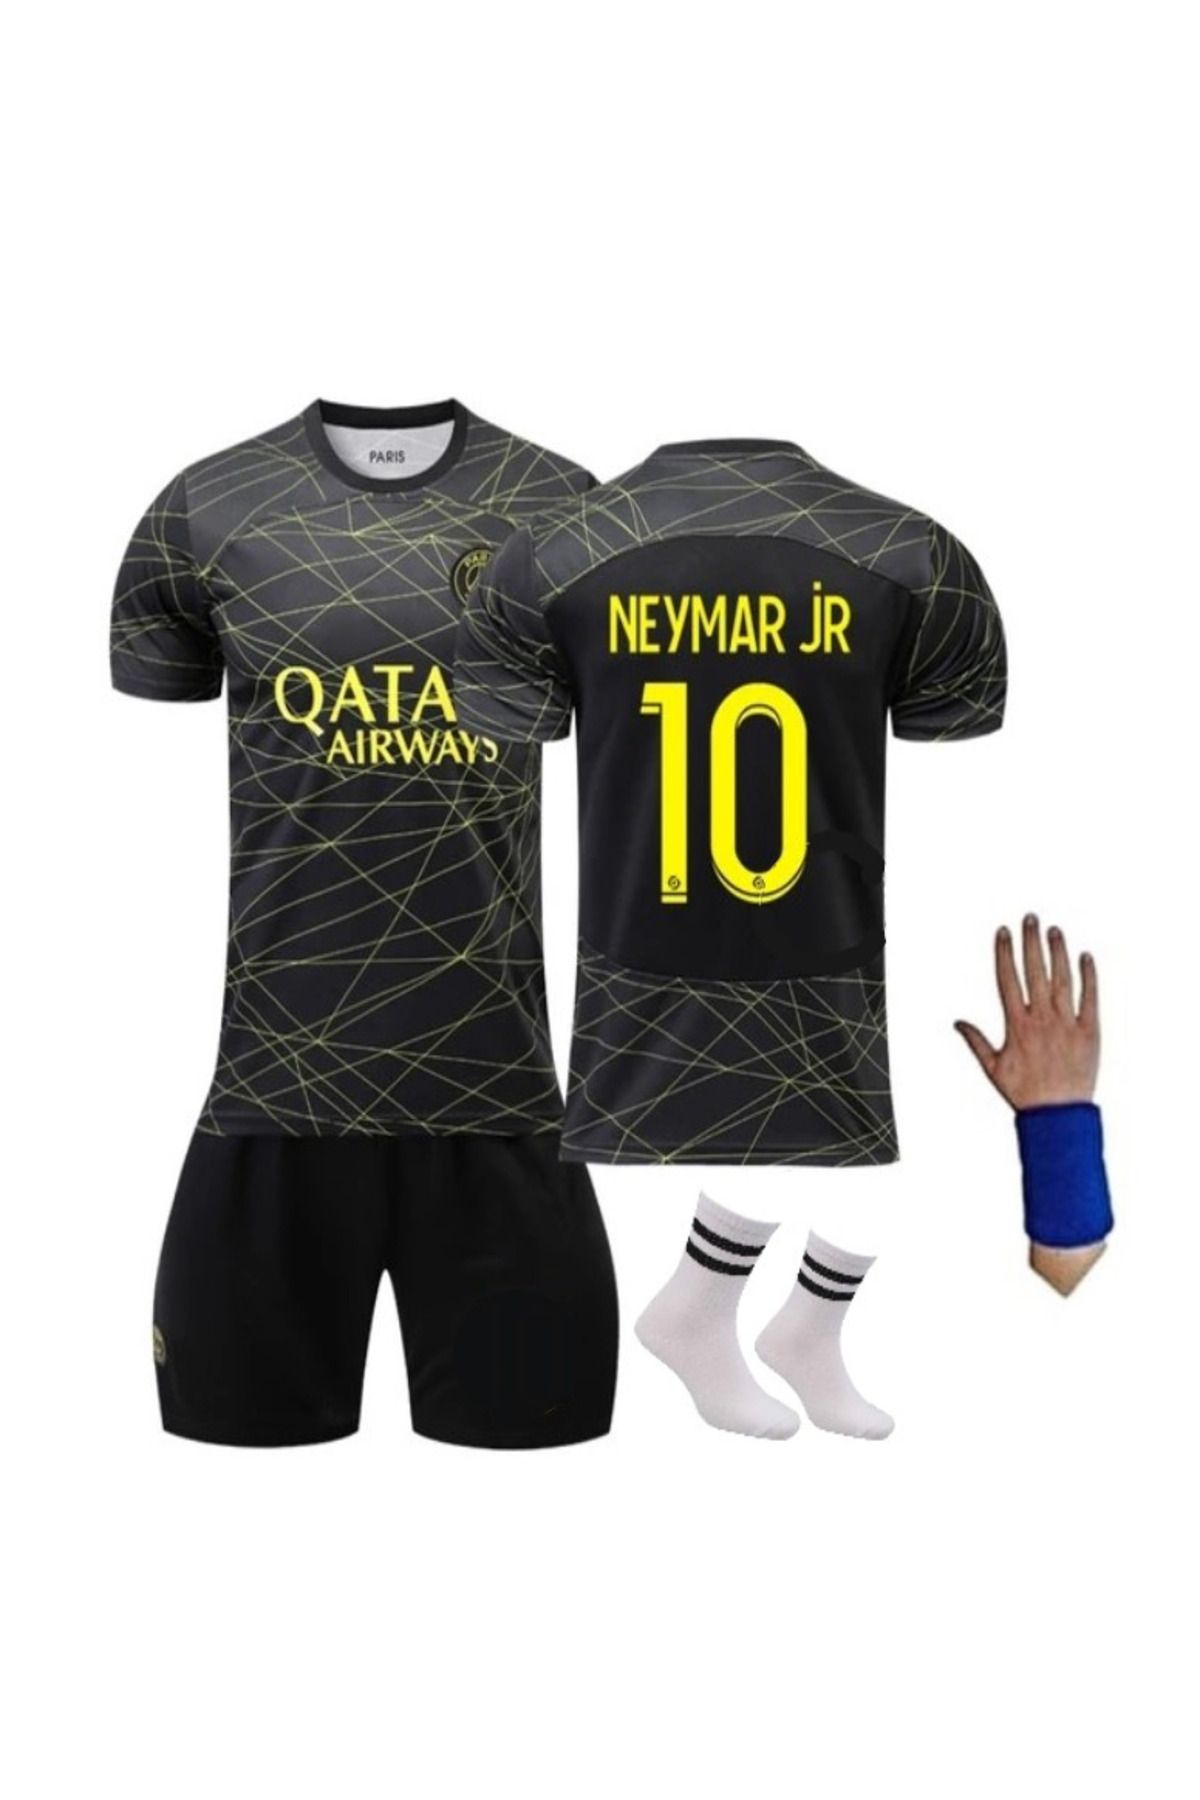 gökmenspor Psg Neymar Gold Çocuk Futbol Takımı Siyah-gold Özel Tasarım 4!lü Set Bileklik Hediyeli